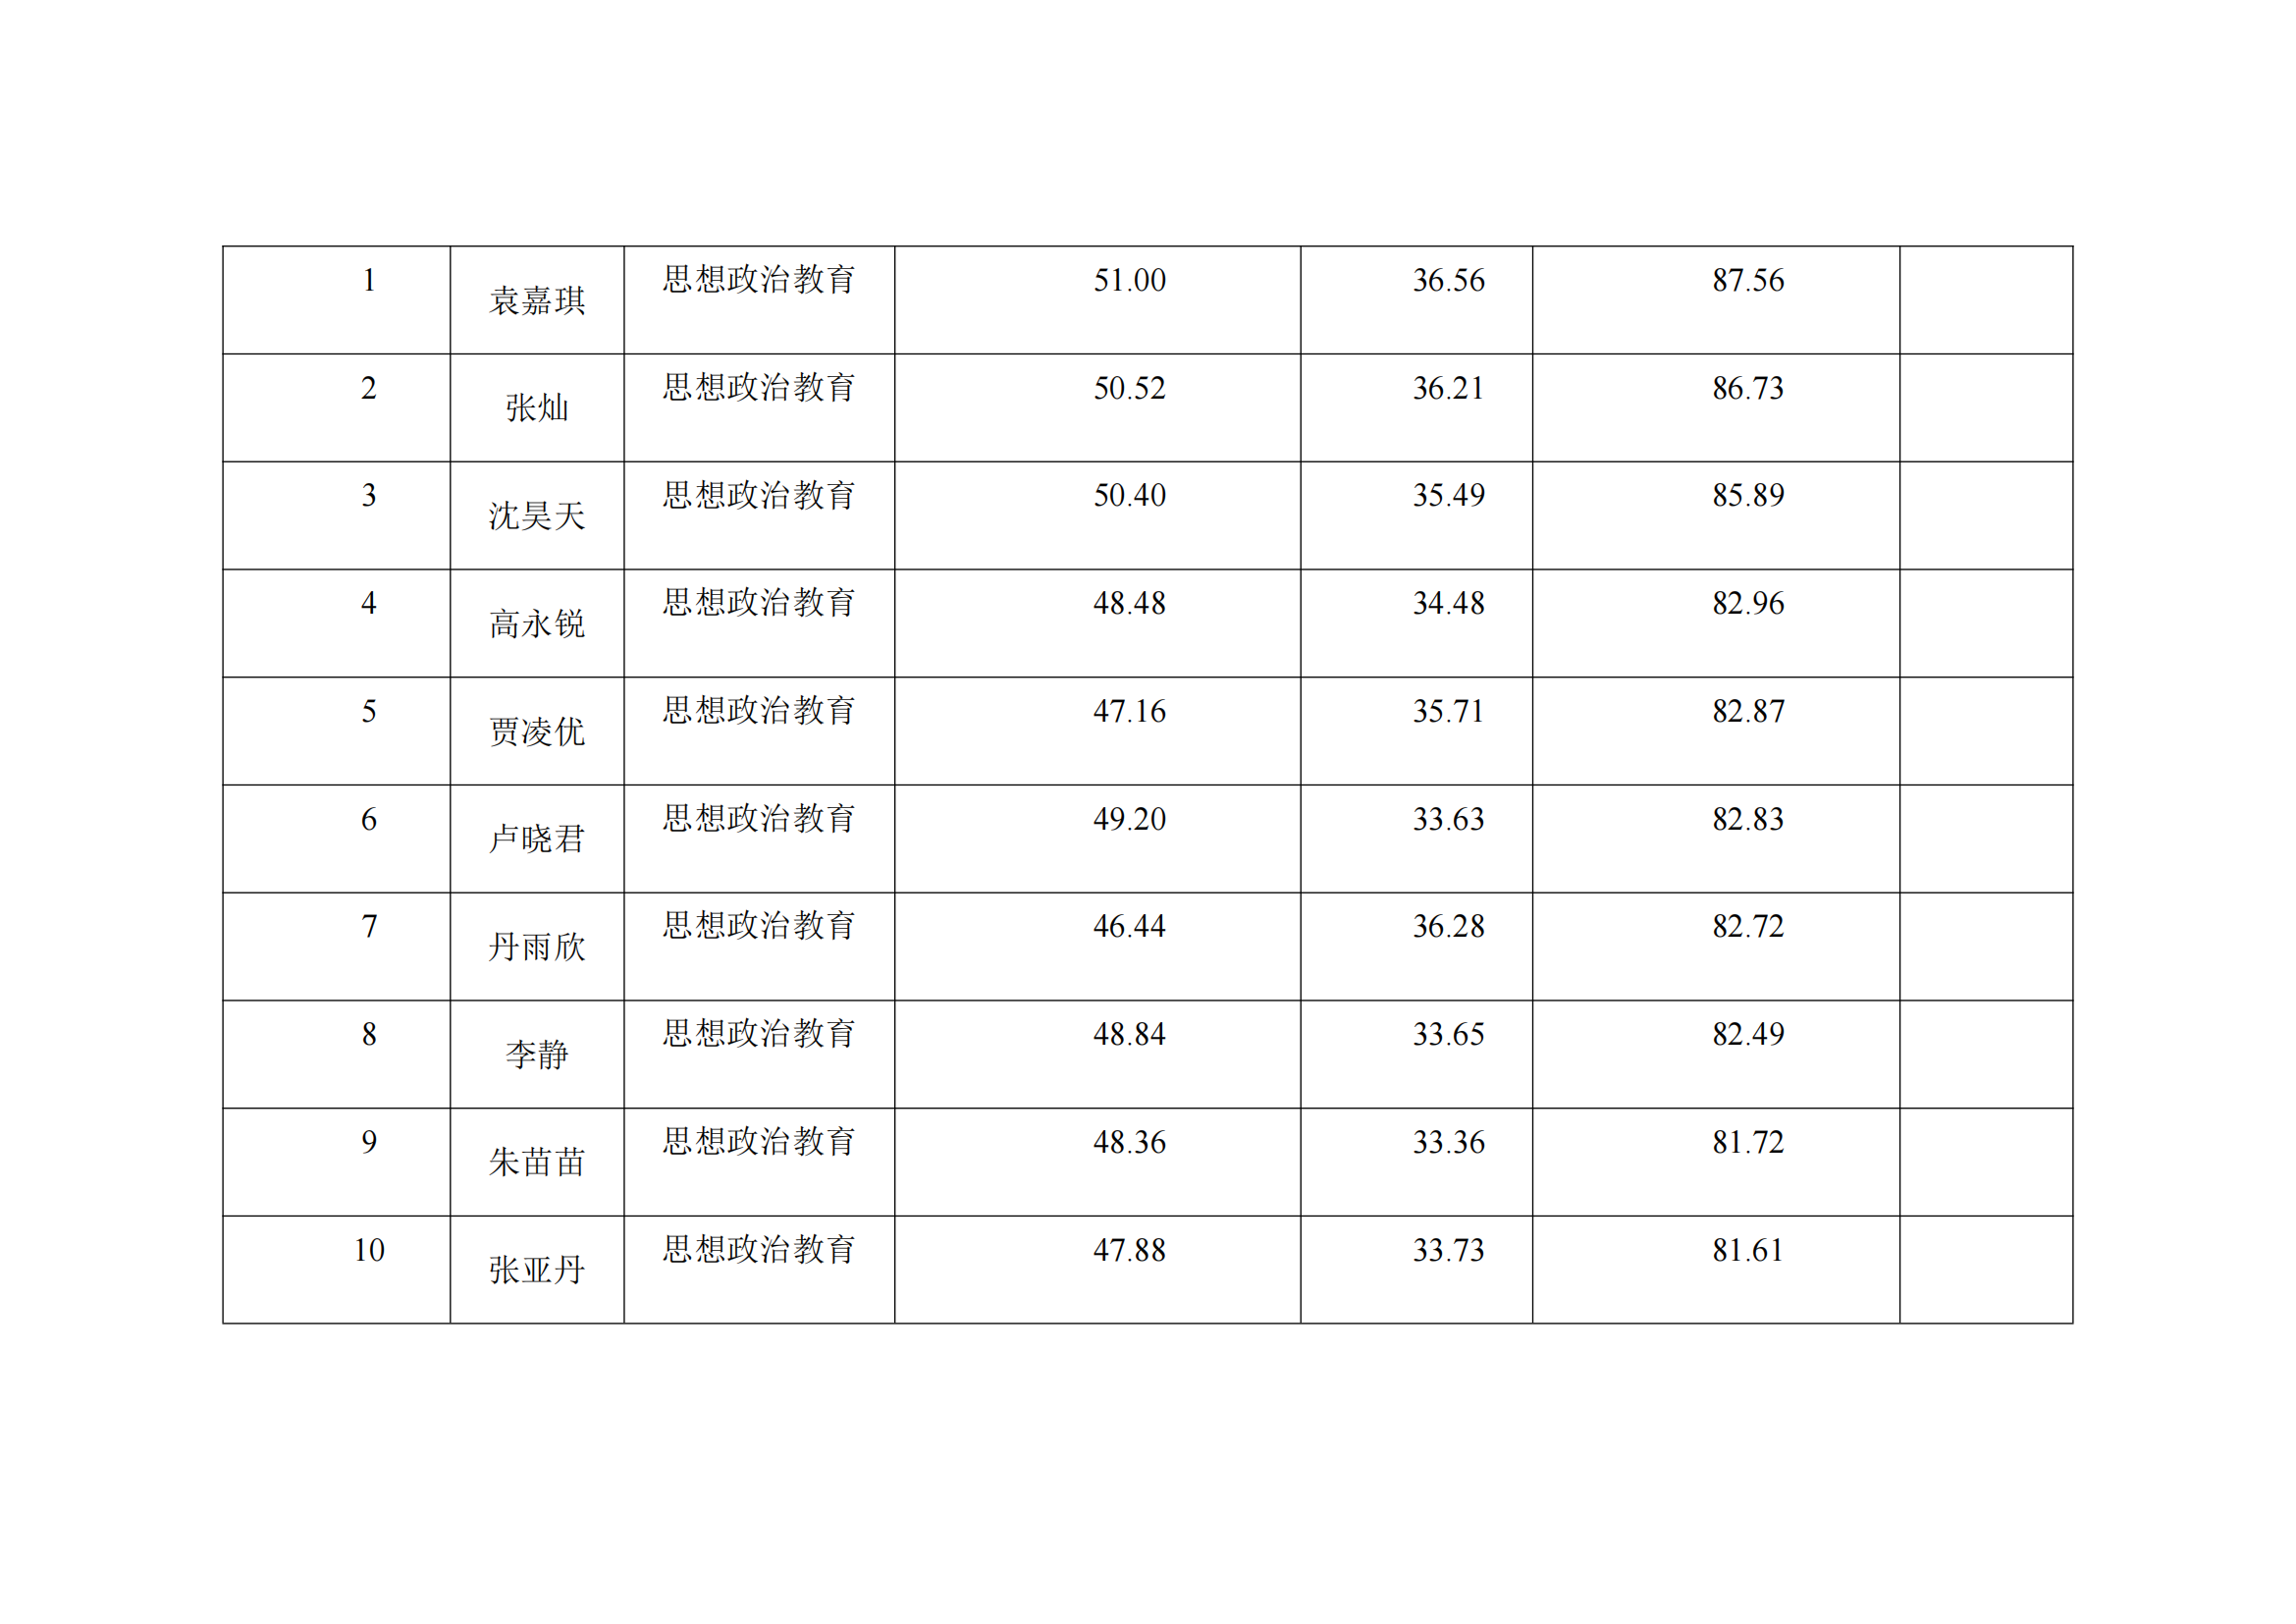 郑州大学马克思主义学院2023年硕士研究生复试结果综合排序公示表_12.png